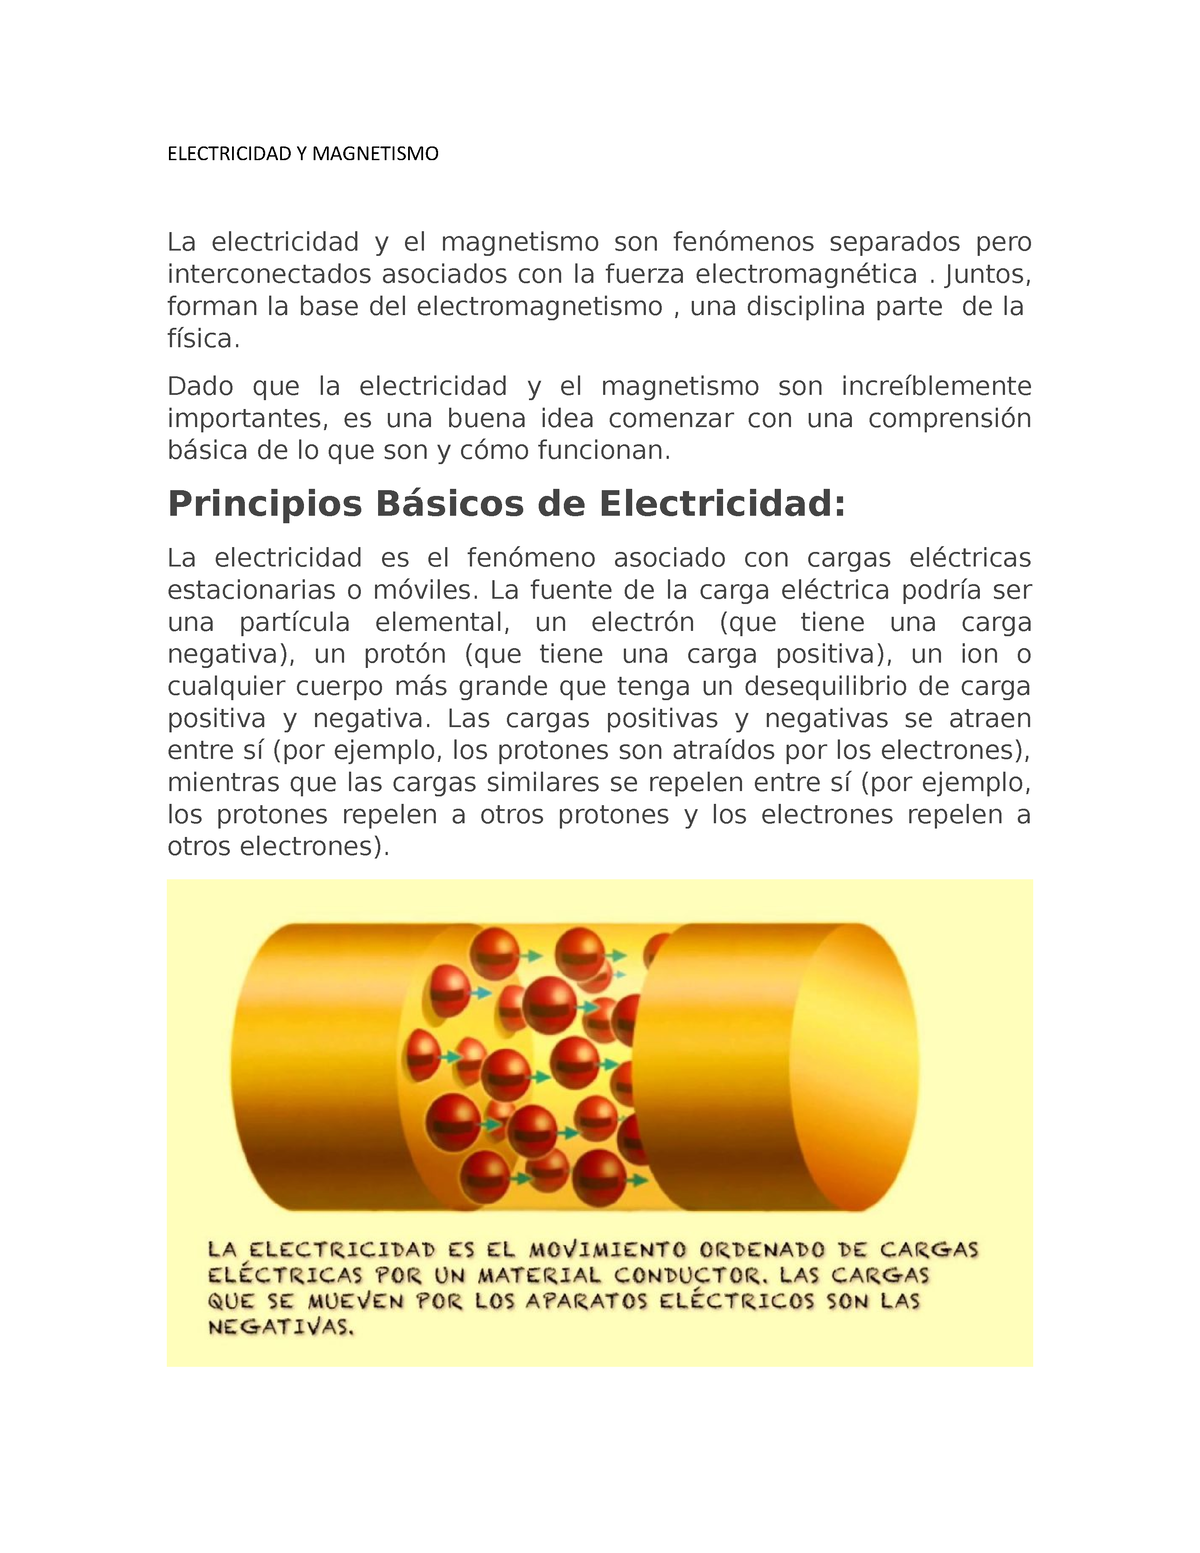 Electricidad Y Magnetismo - UNAM - Studocu